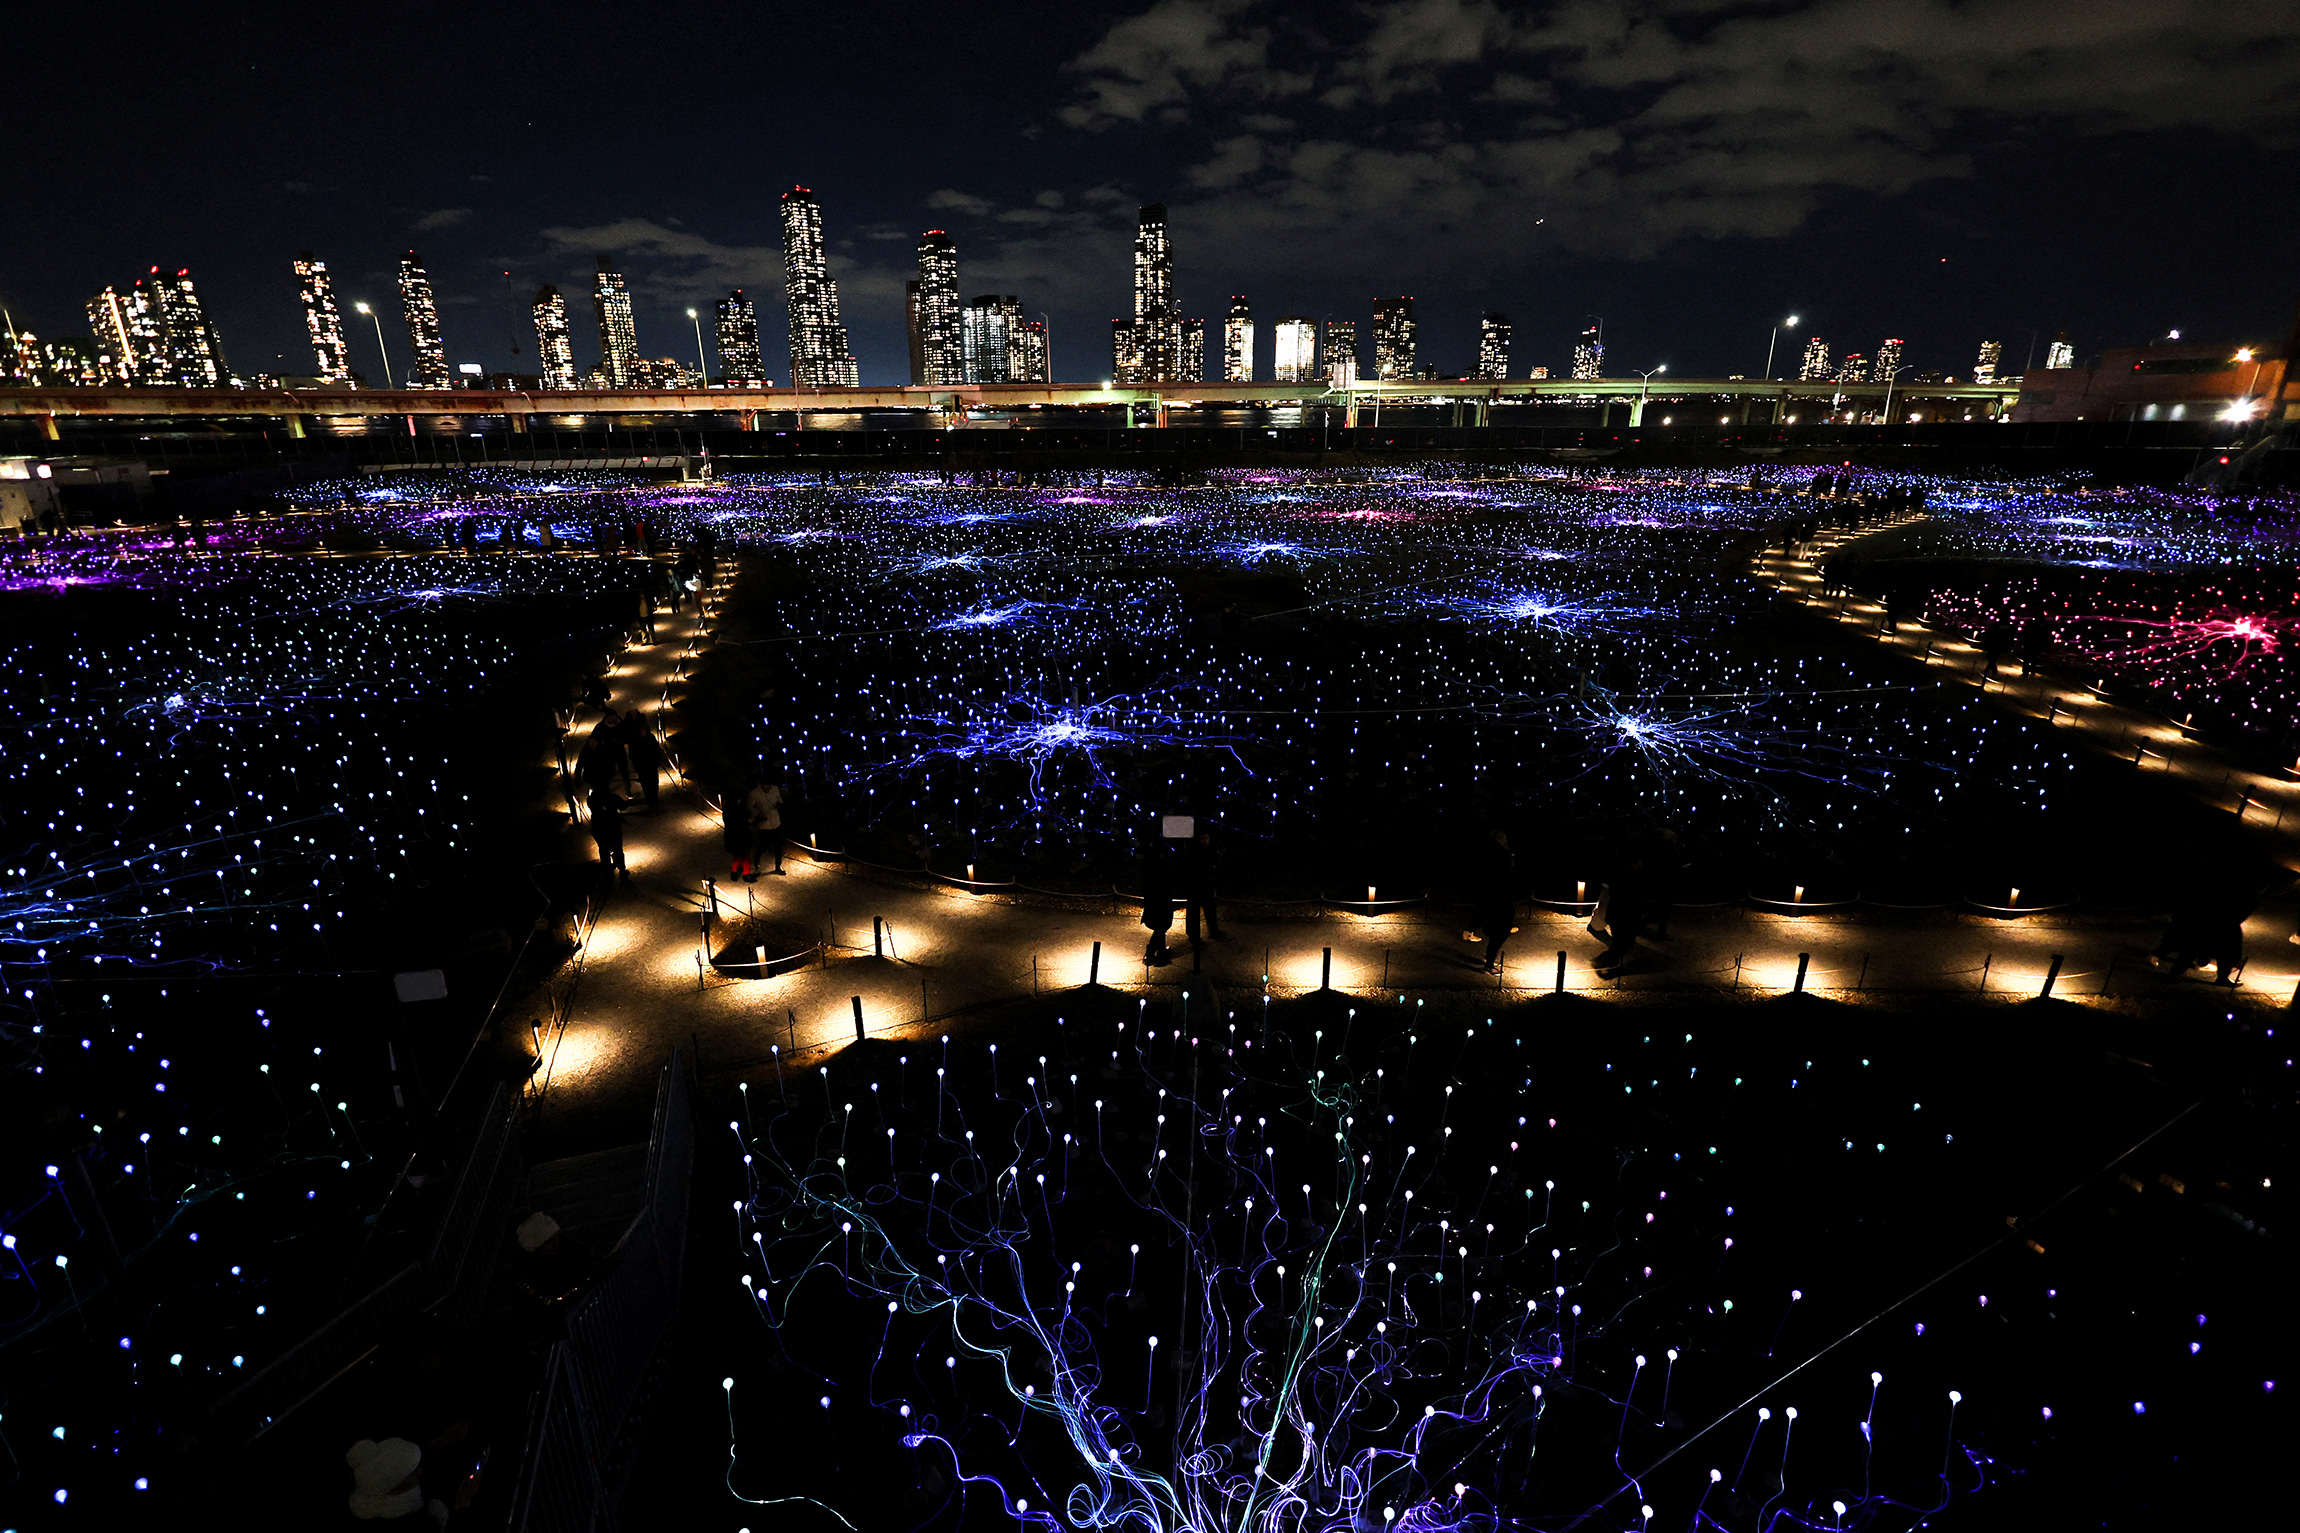 Инсталляция британо-австралийского художника Брюса Манро &laquo;Поле света&raquo; из более чем 17 тыс. светильников на солнечных батареях недалеко от штаб-квартиры ООН в Нью-Йорке